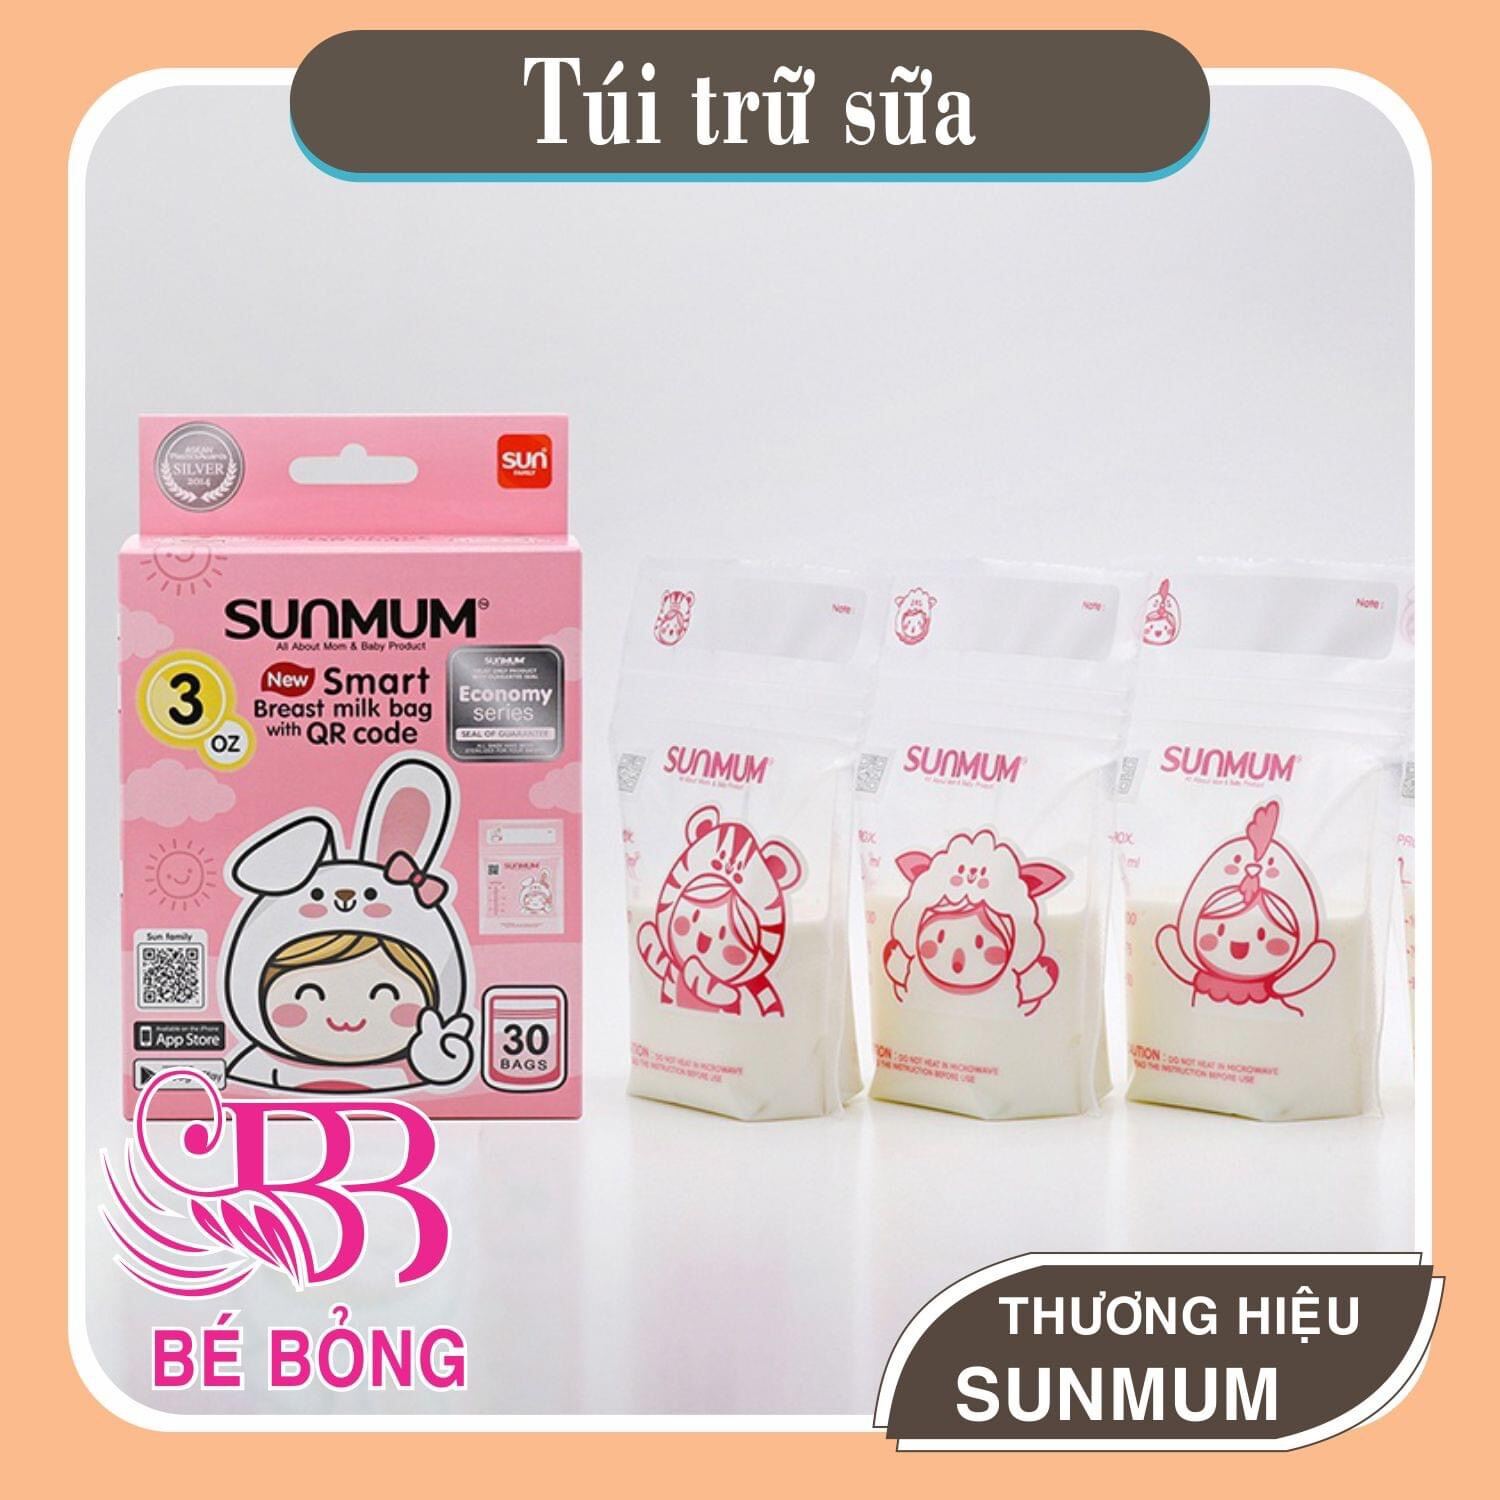 Túi trữ sữa Sunmum chính hãng an toàn tiện lợi với dung tích 100ml